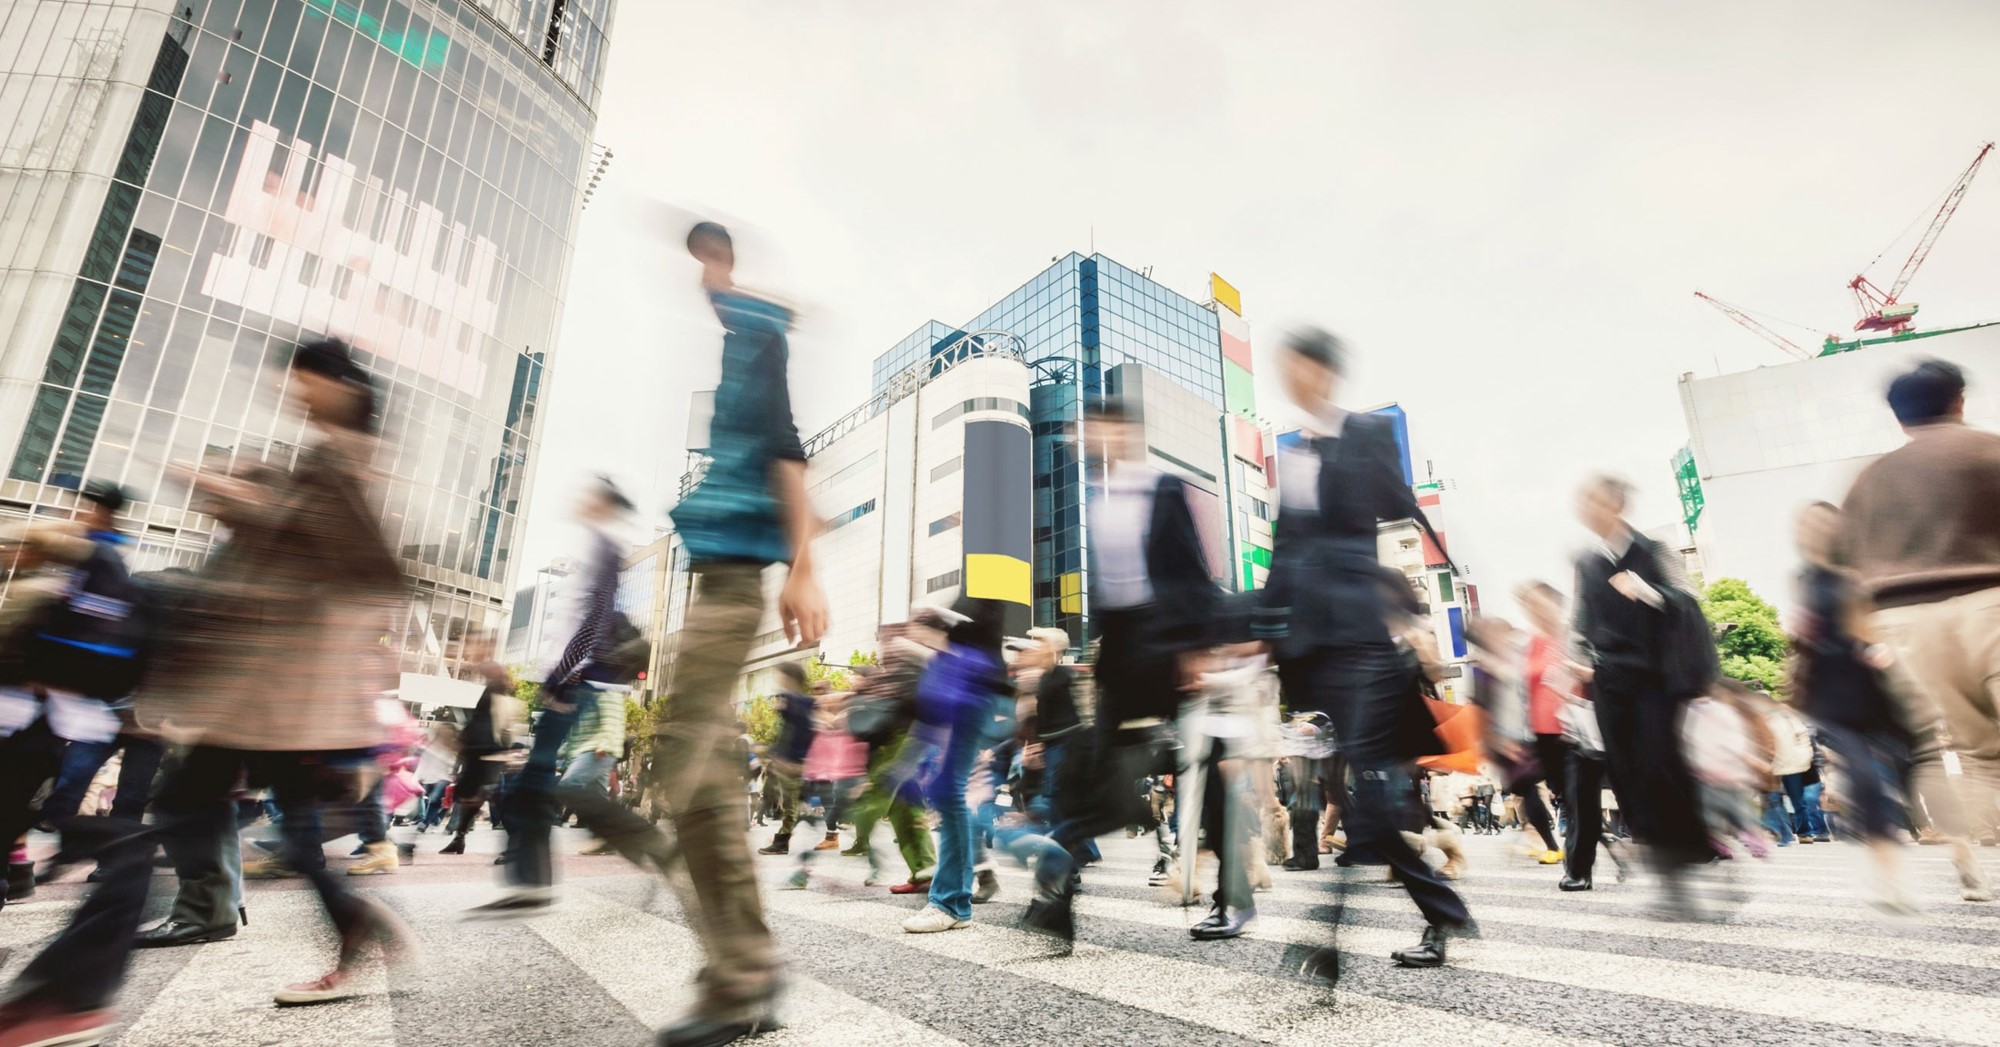 Bank march. Человек в большом городе. Толпа людей на улице фото снизу. Токио пешеходный переход. Пешеходный переход в Токио голограмма.